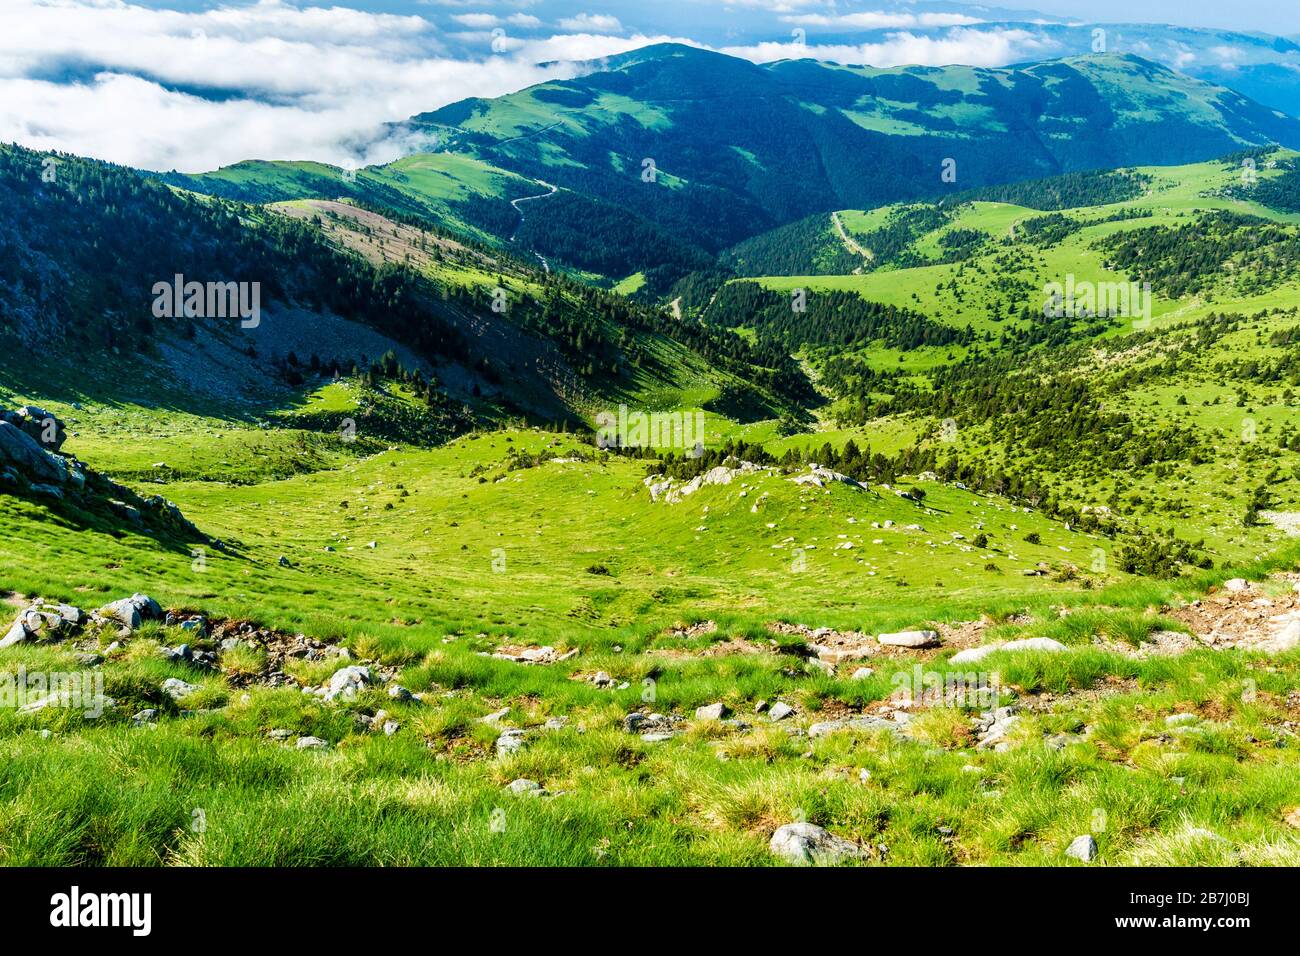 Am Morgen können Sie sich beim Wandern in den schönen grünen Bergen entspannen. Stockfoto